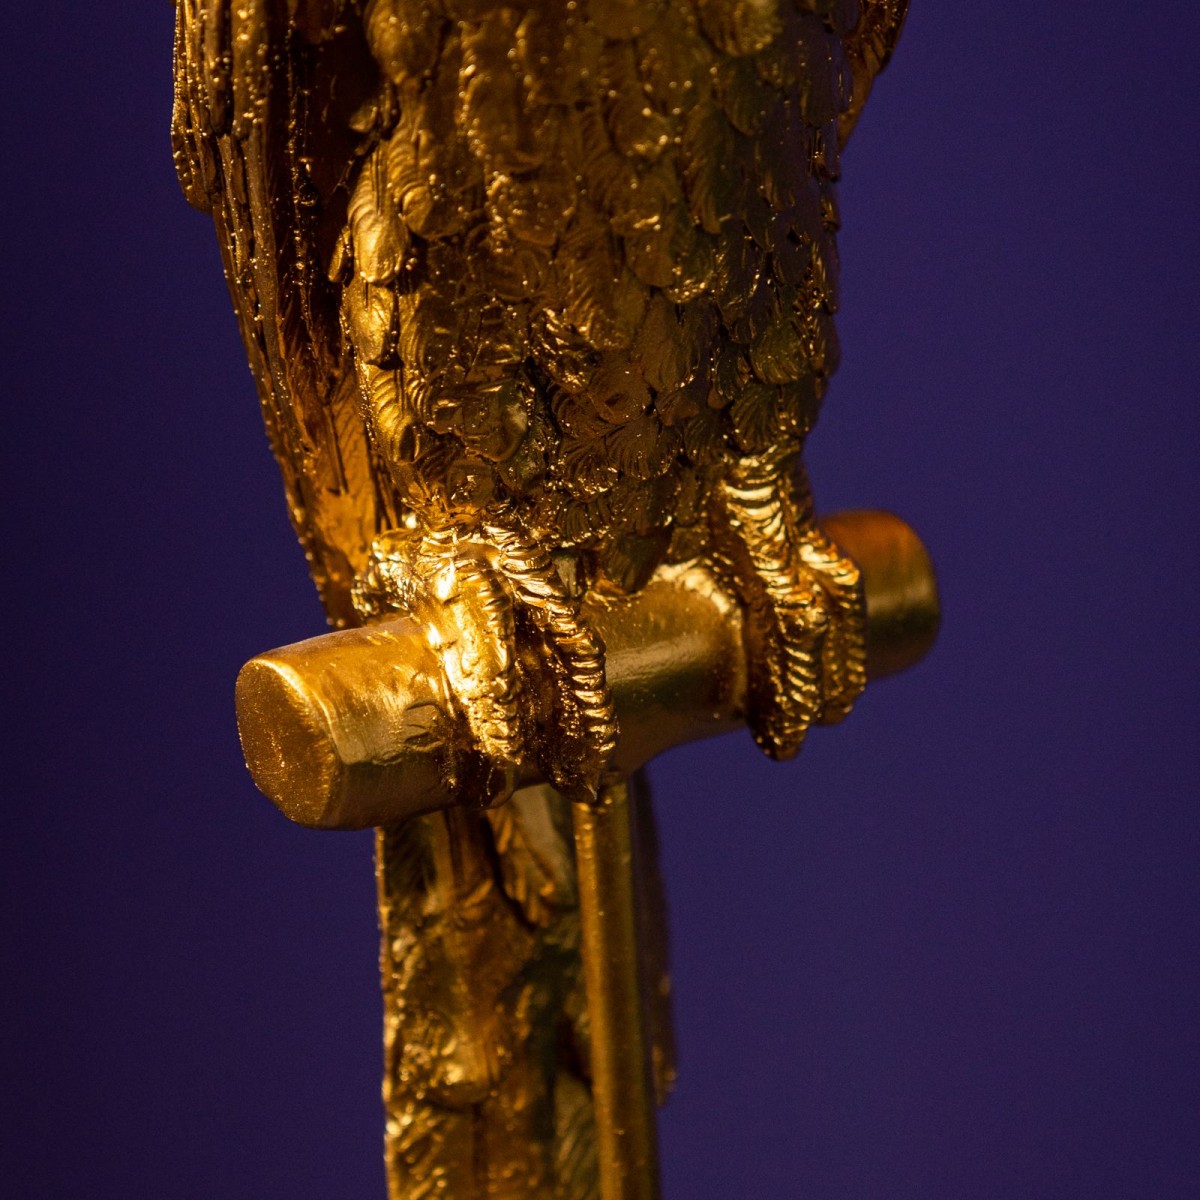 Lampadare WernerVoss WRV-49979. Culoare: Auriu cu abajur turcoaz; Material: Polirășină